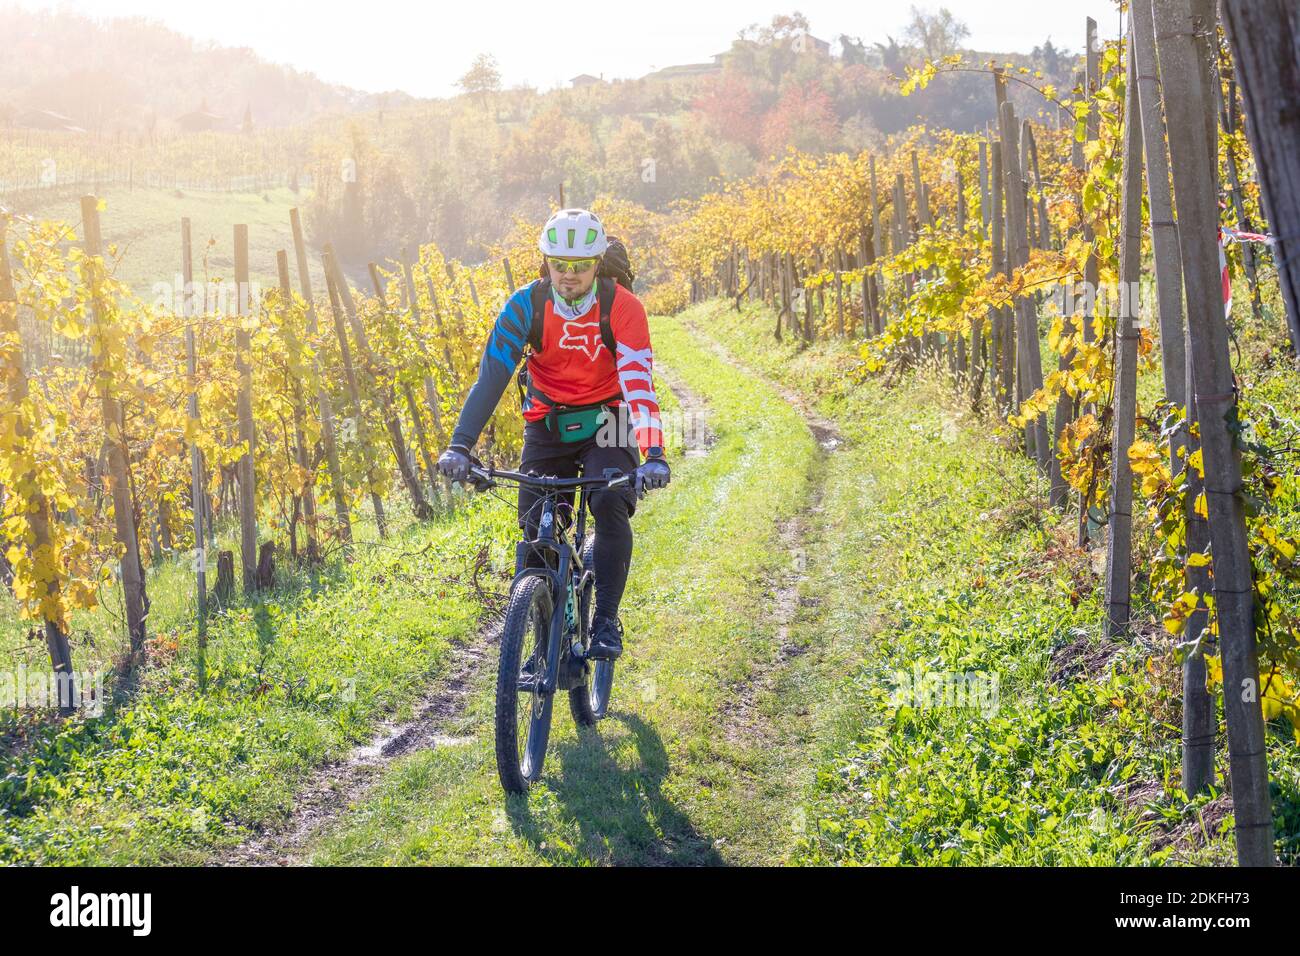 Un homme passe sur les sentiers à travers les vignobles de Prosecco en automne avec un e-bike (e-mtb), vignobles de Valdobbiadene, province de Trévise, Vénétie, Italie Banque D'Images